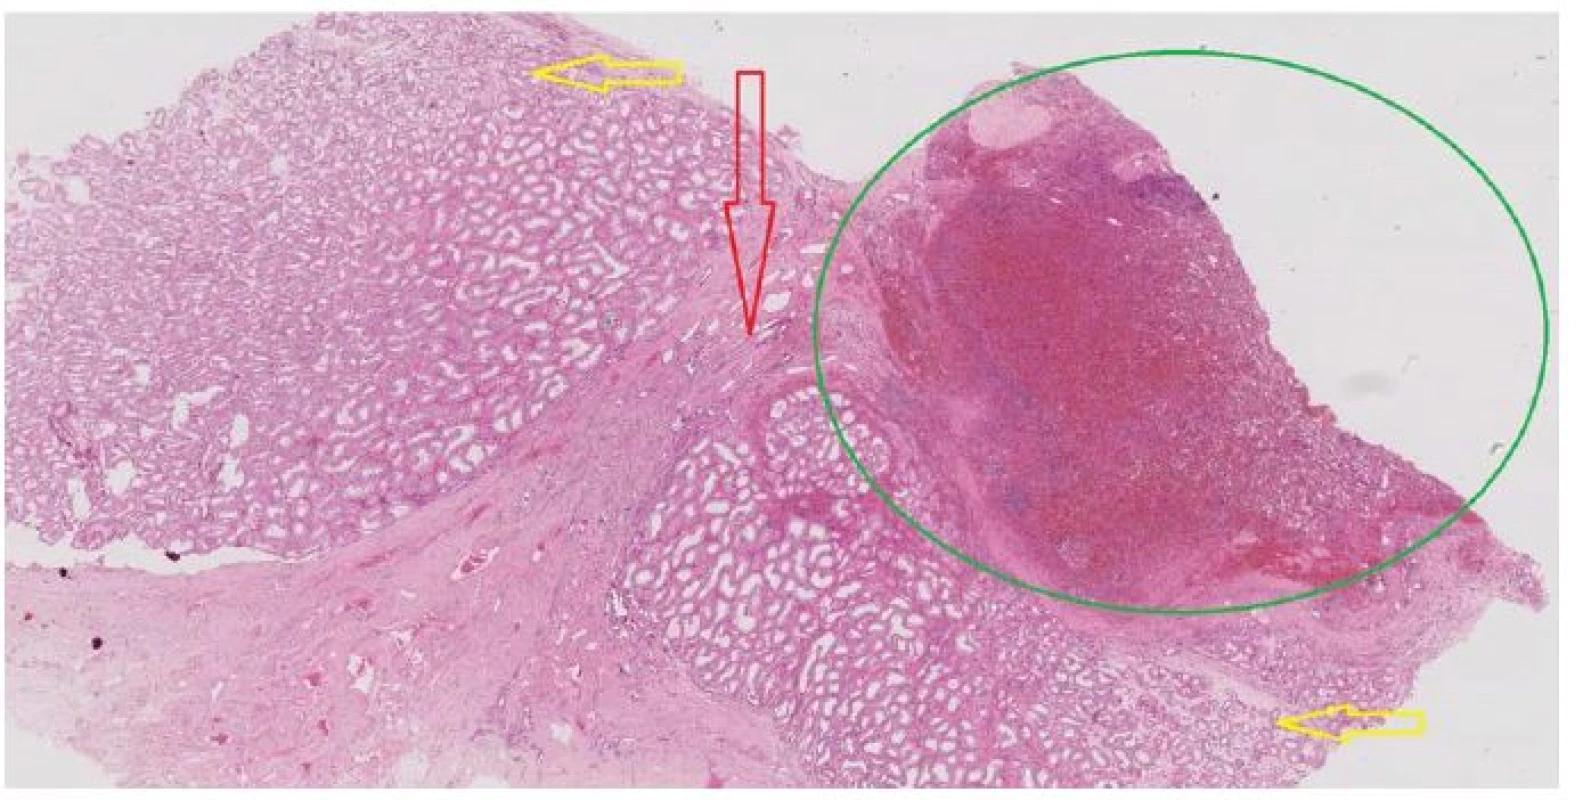 Histologický preparát: zelenou je označena tkáň sleziny, červená šipka směřuje k rete testis, žluté šipky
označují parenchym varlete (se semenotvornými kanálky), zvětšeno 100x, barvení H&E<br>
Fig. 2. Histological specimen: the splenic tissue is marked green, the red arrow points to the rete test